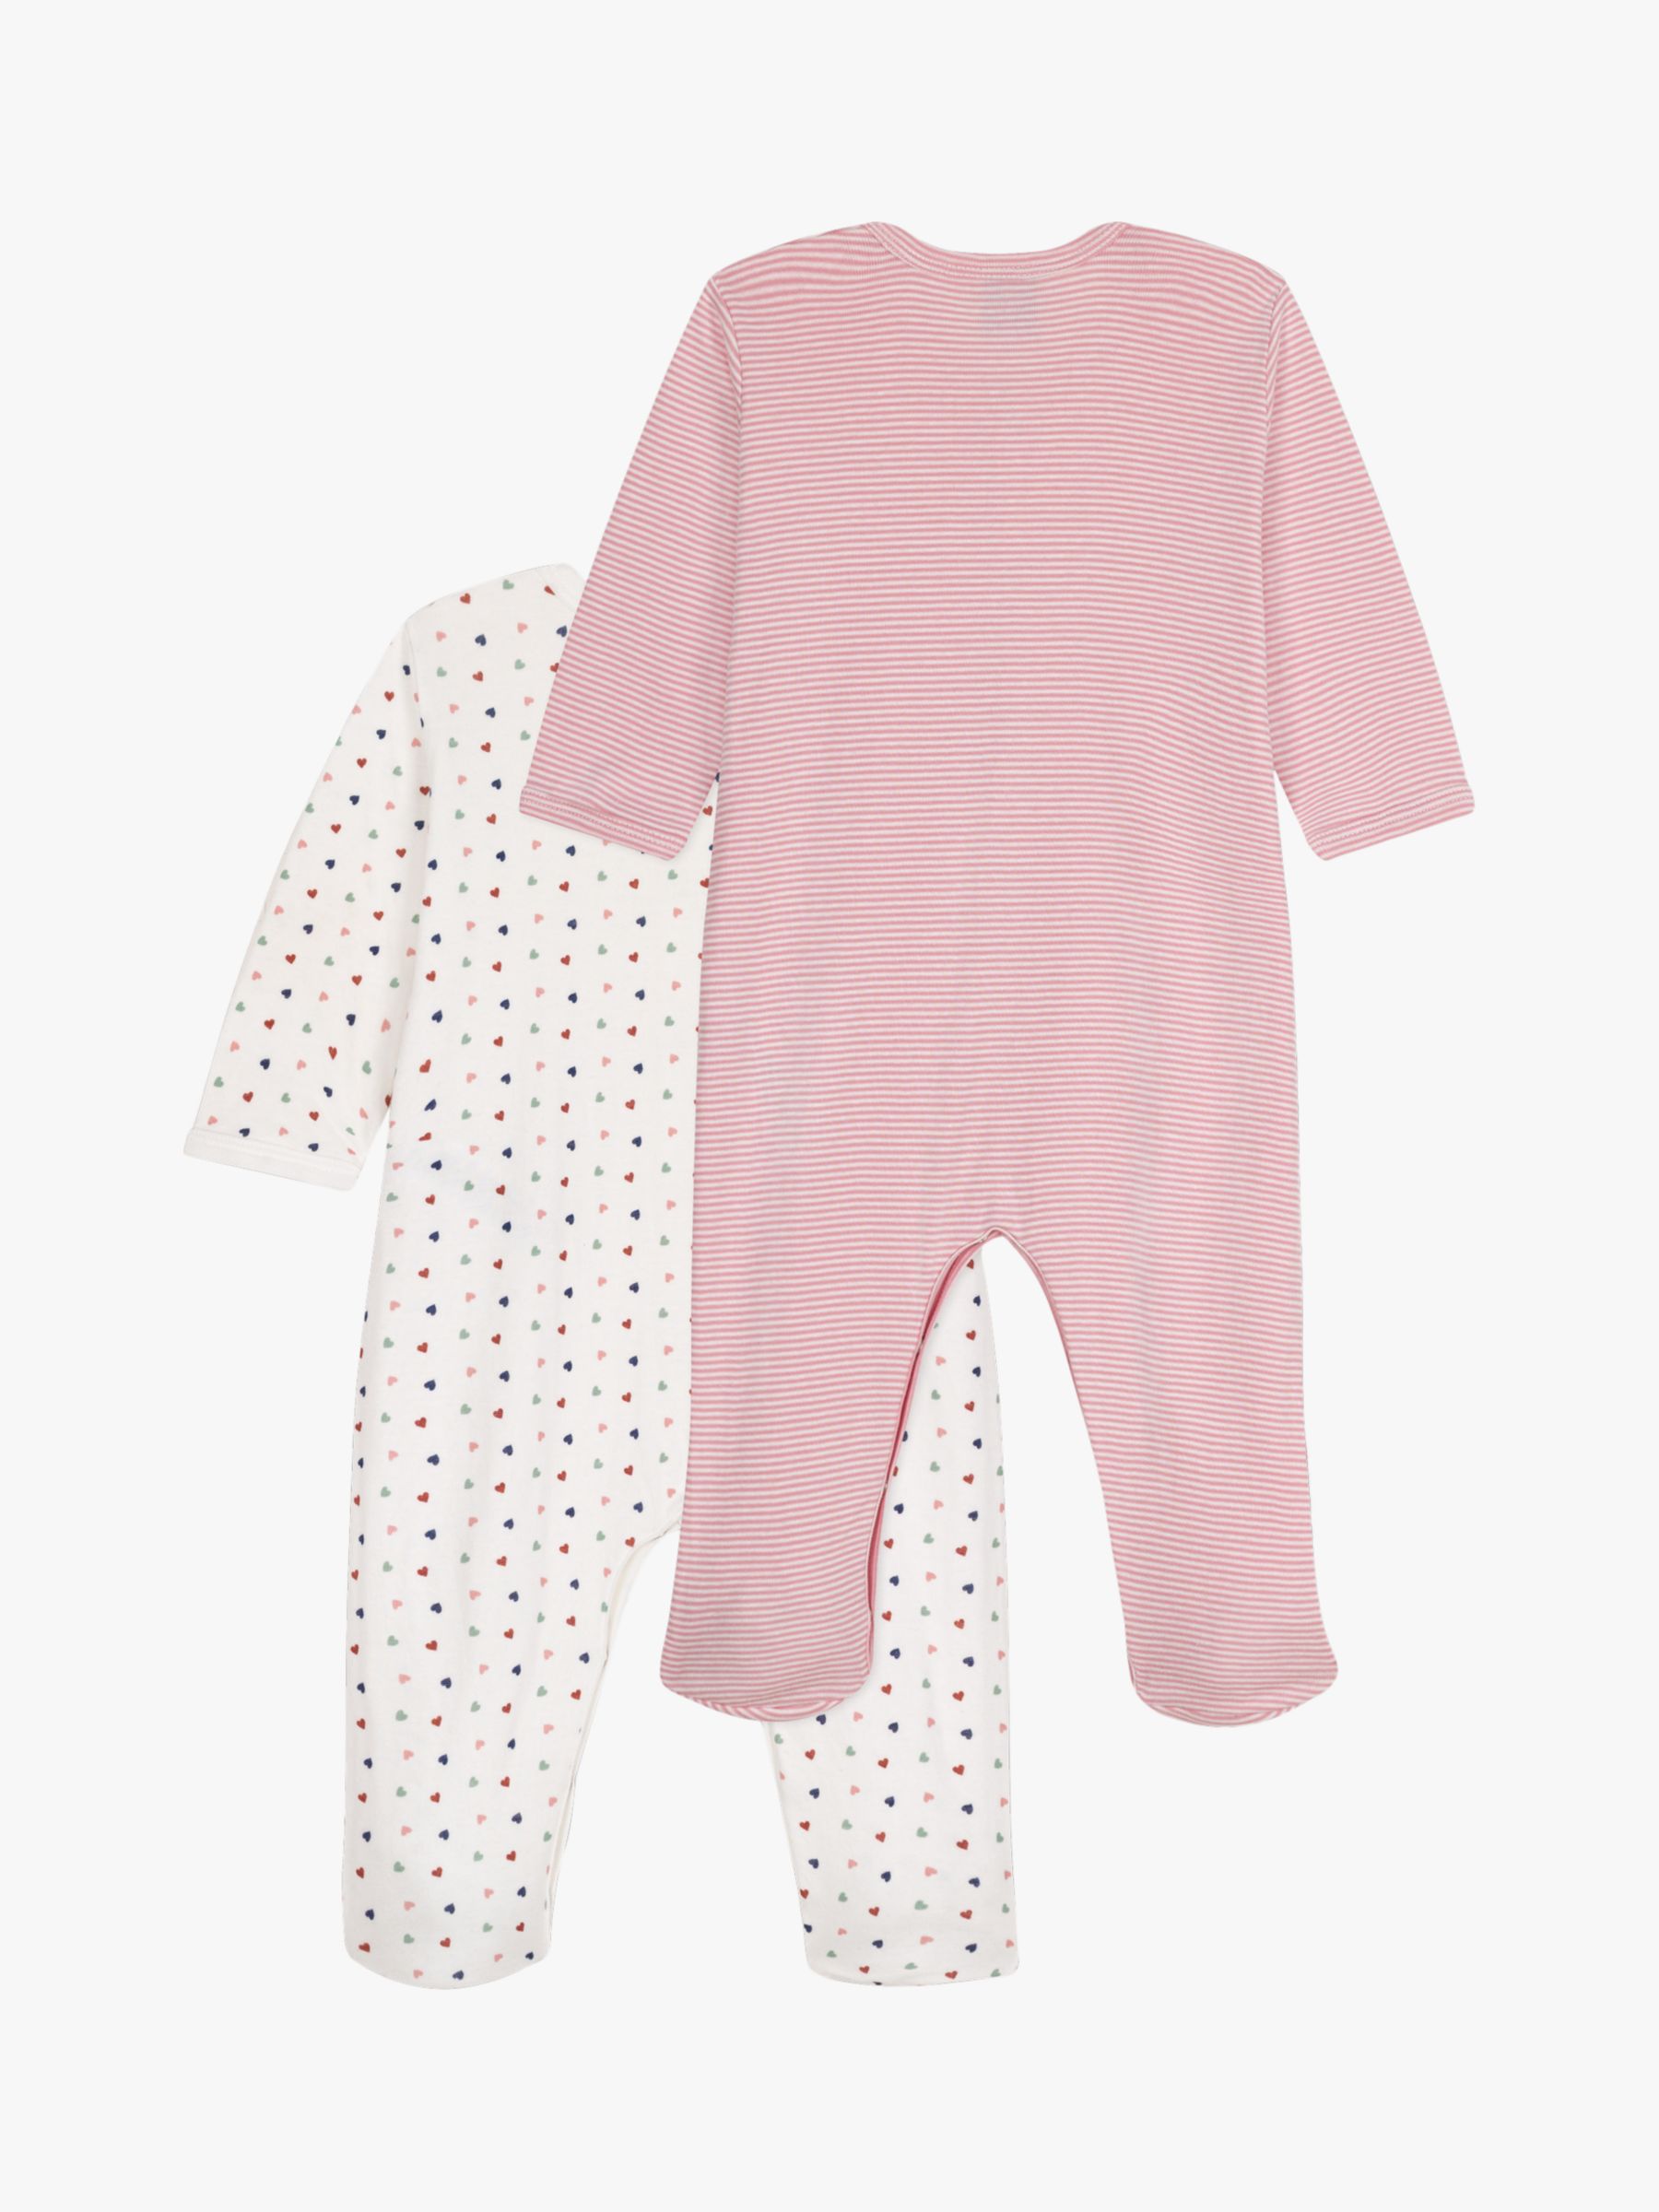 Buy Petit Bateau Baby Heart/Stripe Long Sleeve Sleepsuits, Packof 2, Multi Online at johnlewis.com